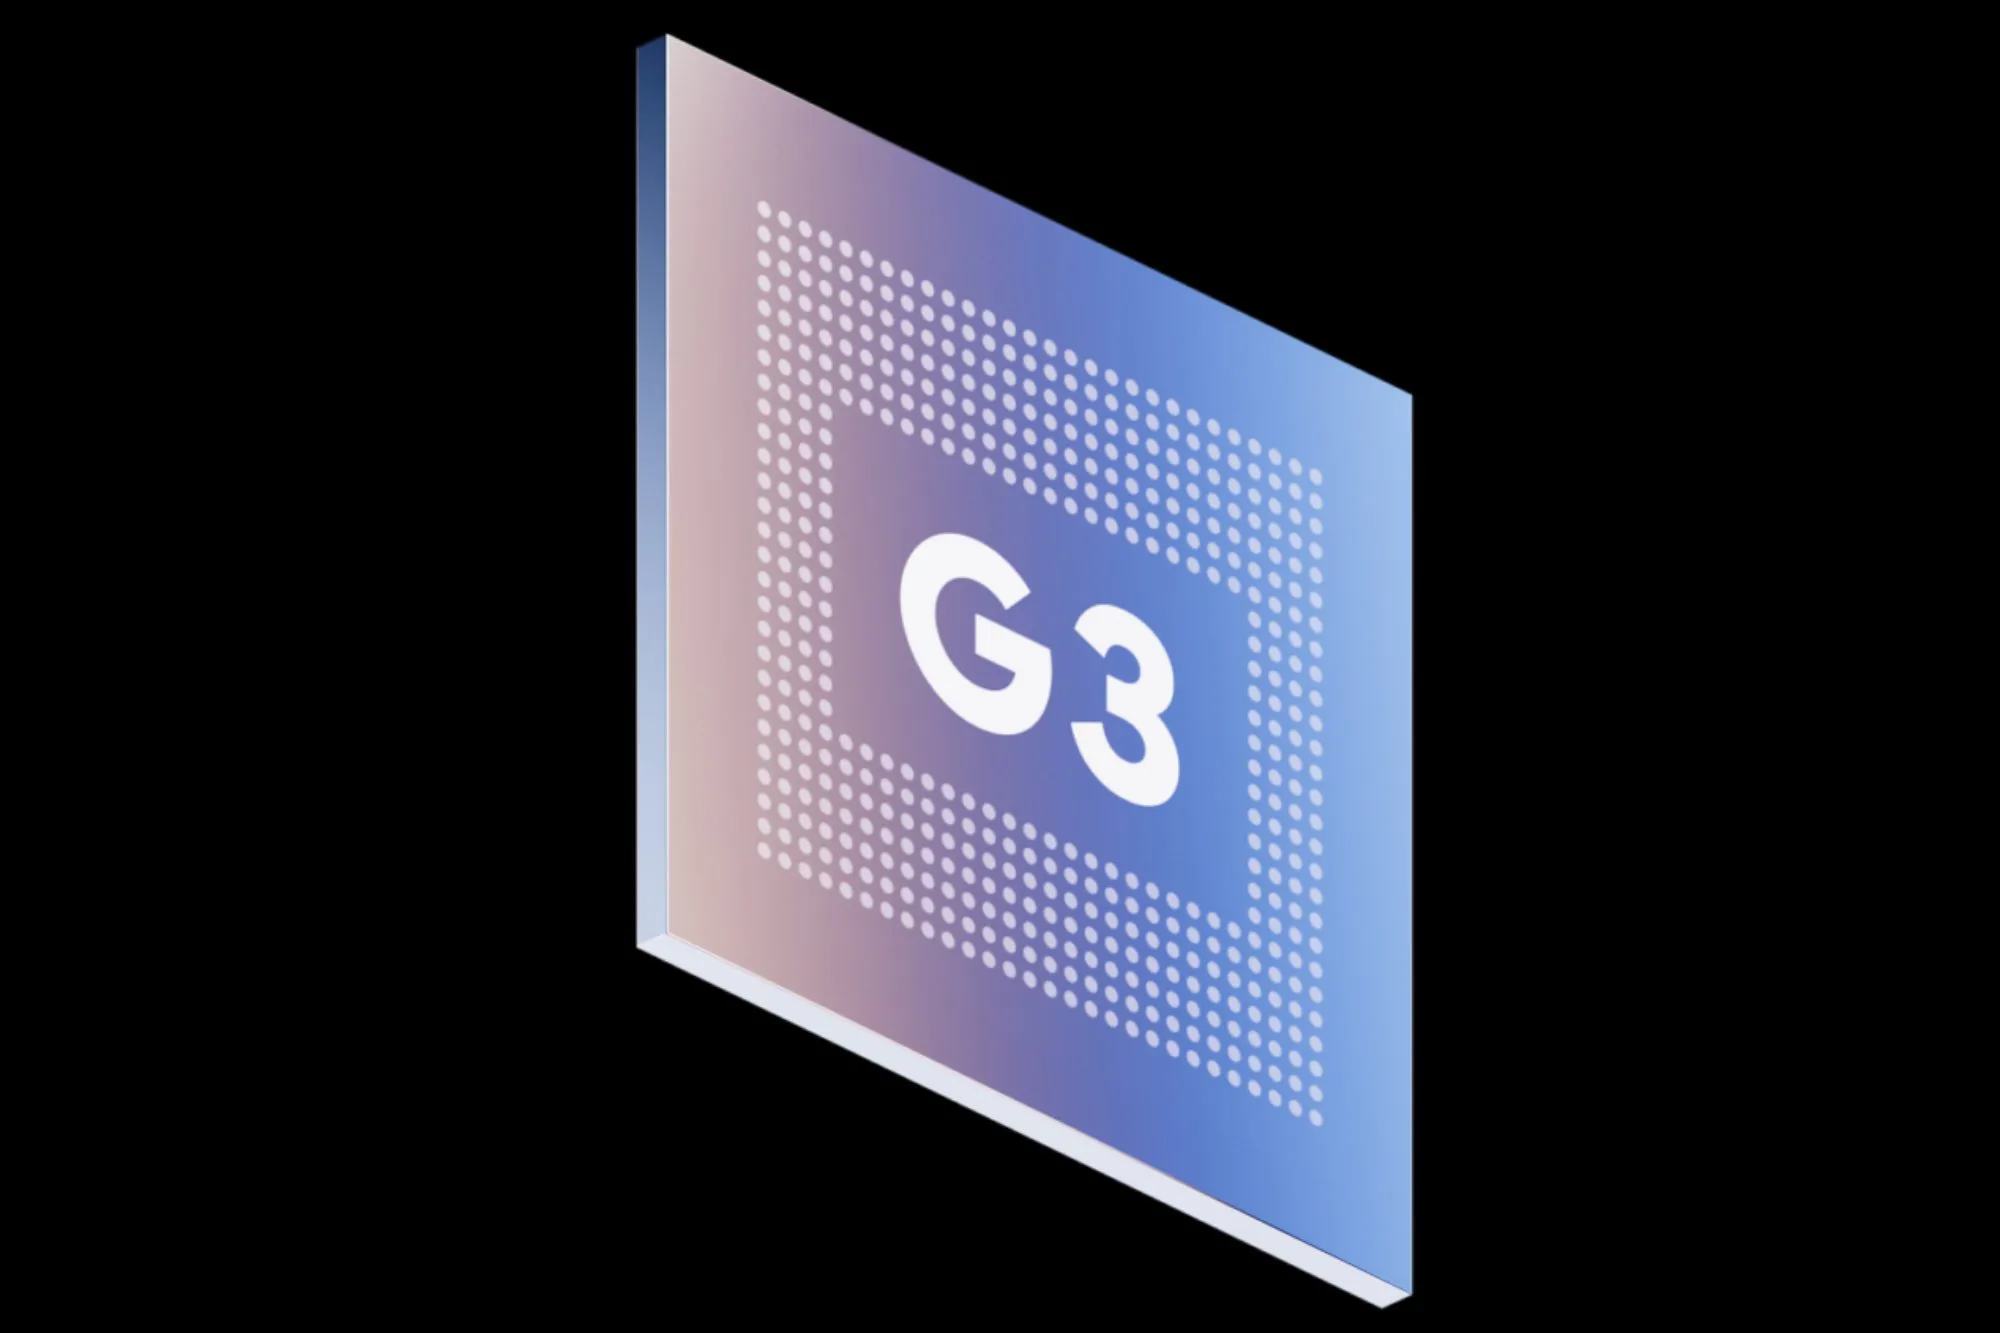 谷歌的张量 G3芯片的官方产品渲染图。